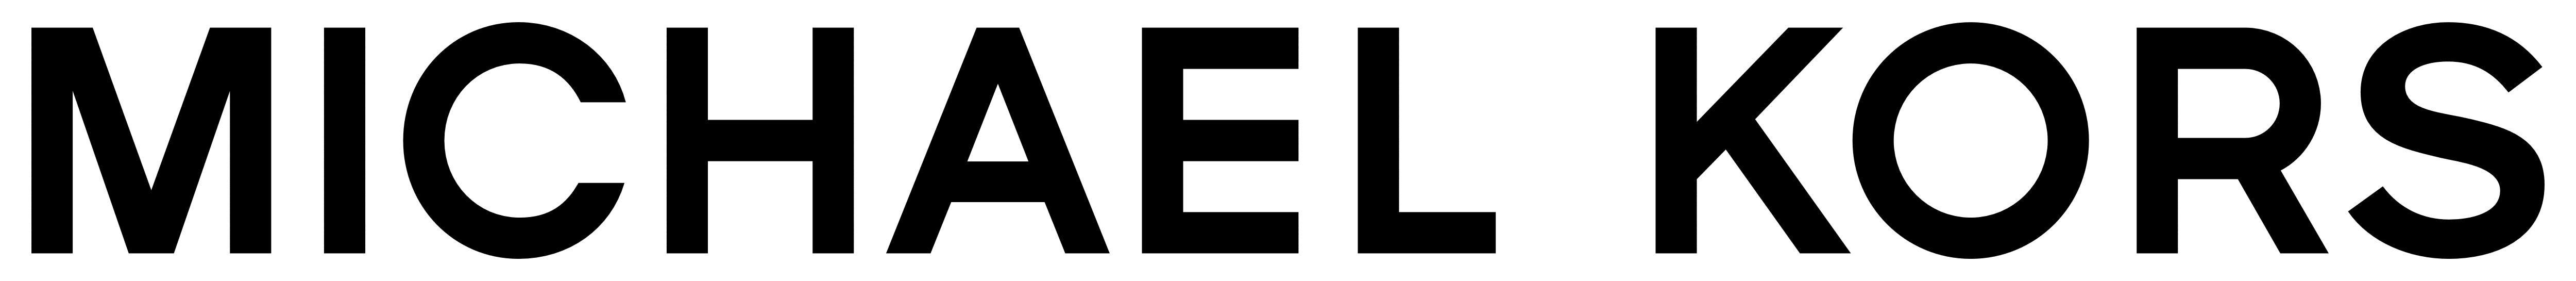 Michael Kors – Logos Download